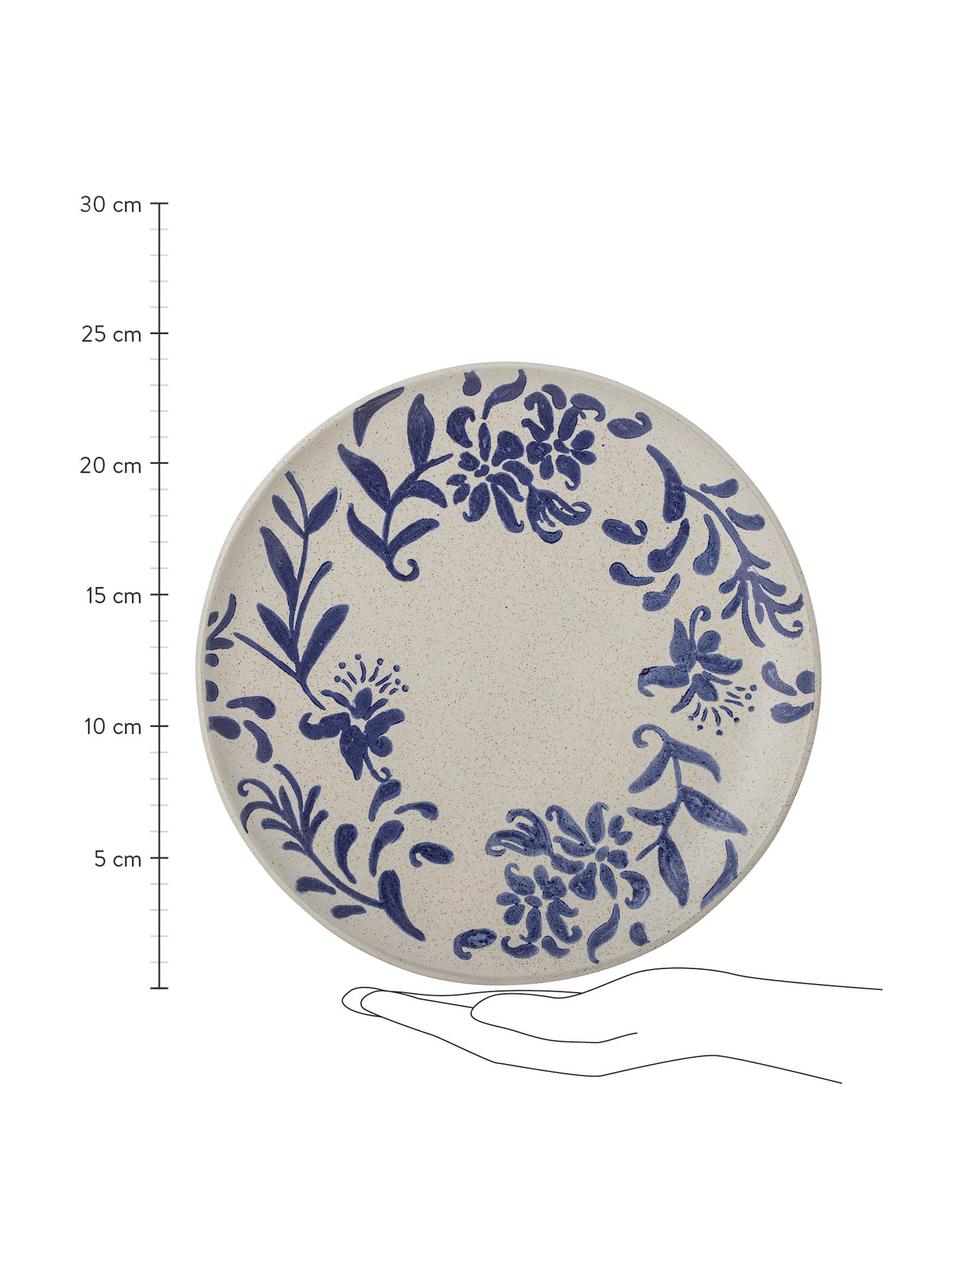 Handbeschilderde dinerborden Petunia met bloemmotief, 6 stuks, Keramiek, Beige, blauwtinten, Ø 24 cm